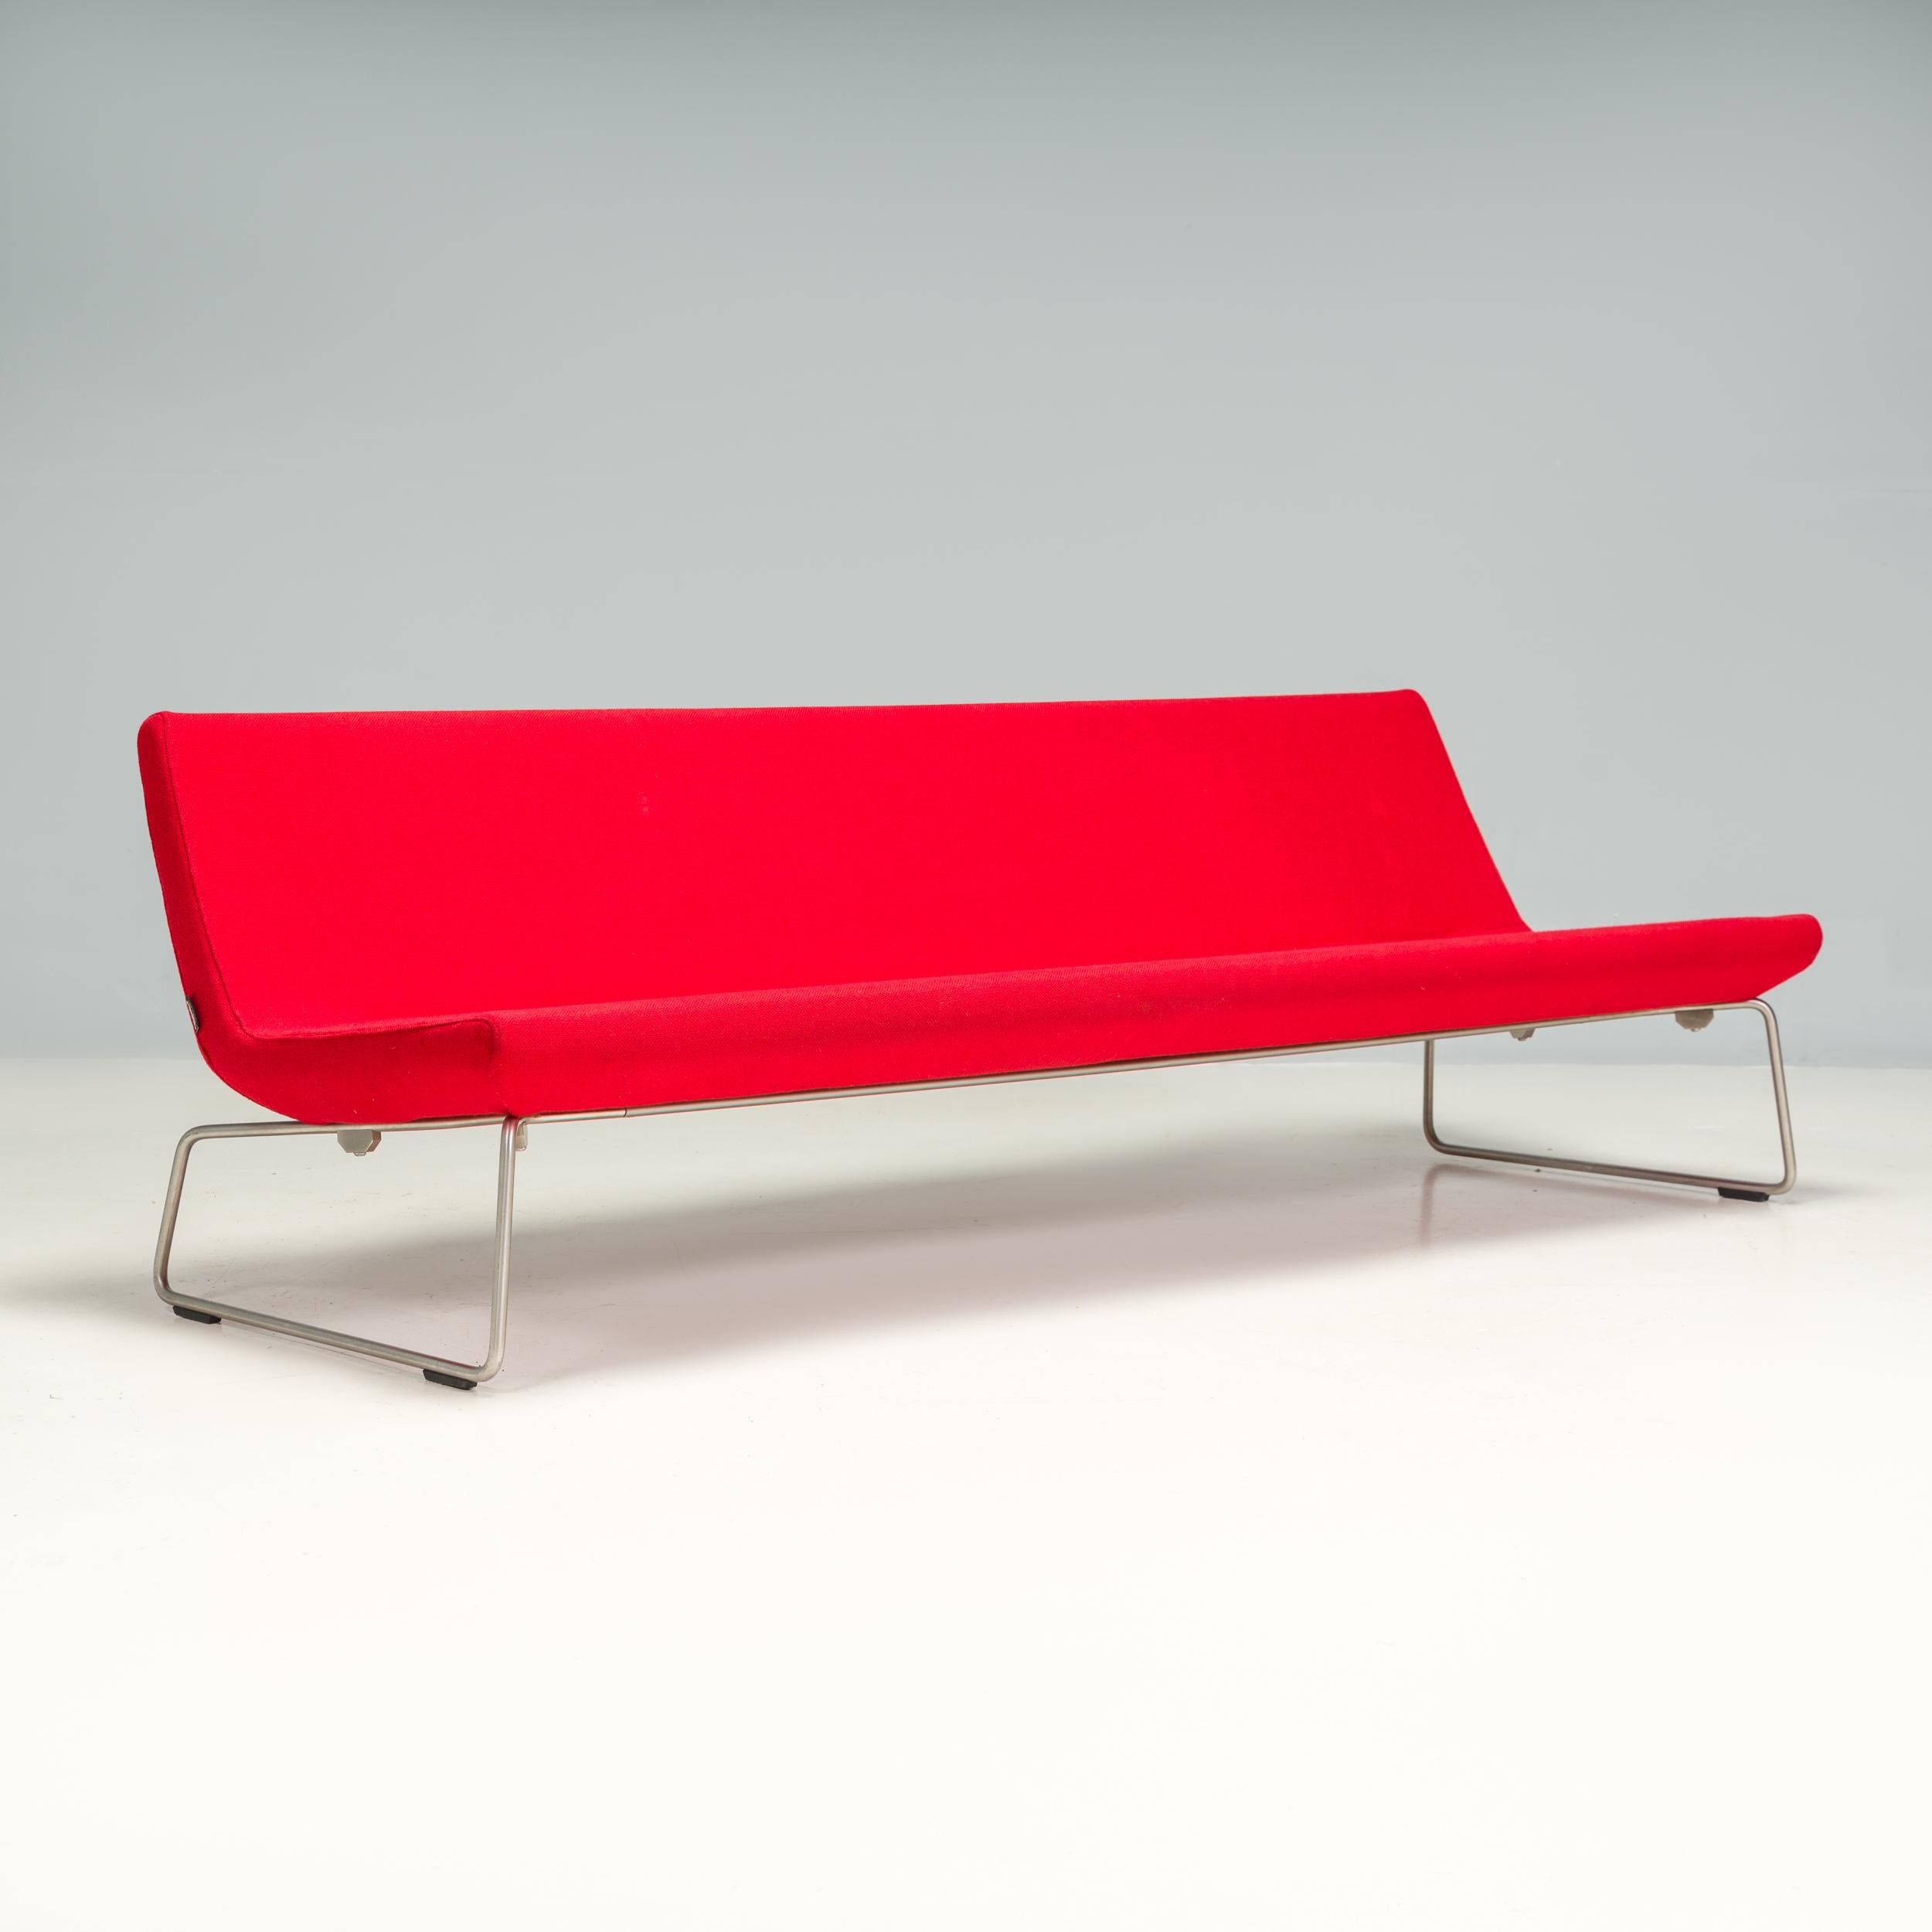 Ursprünglich von britischen Industriedesignern entworfen  Das von Edward Barber und Jay Osgerby im Jahr 2000 entworfene und von Cappellini hergestellte Superlight-Sofa ist ein fantastisches Beispiel für minimalistisches, zeitgenössisches